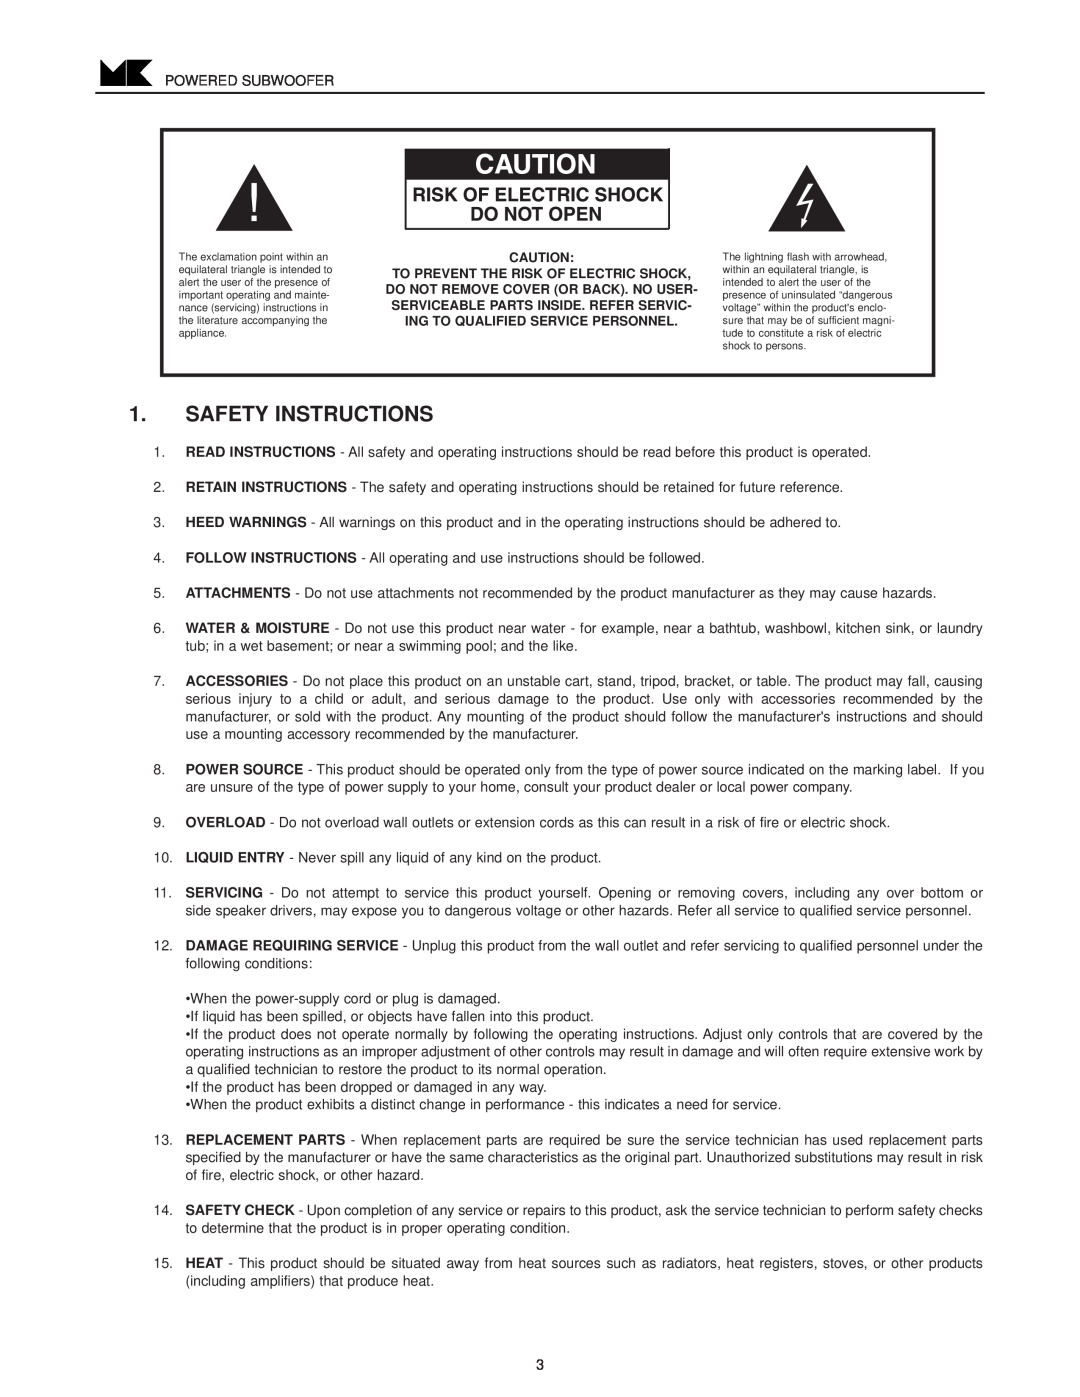 MK Sound VX-860, VX-850 operation manual Safety Instructions 